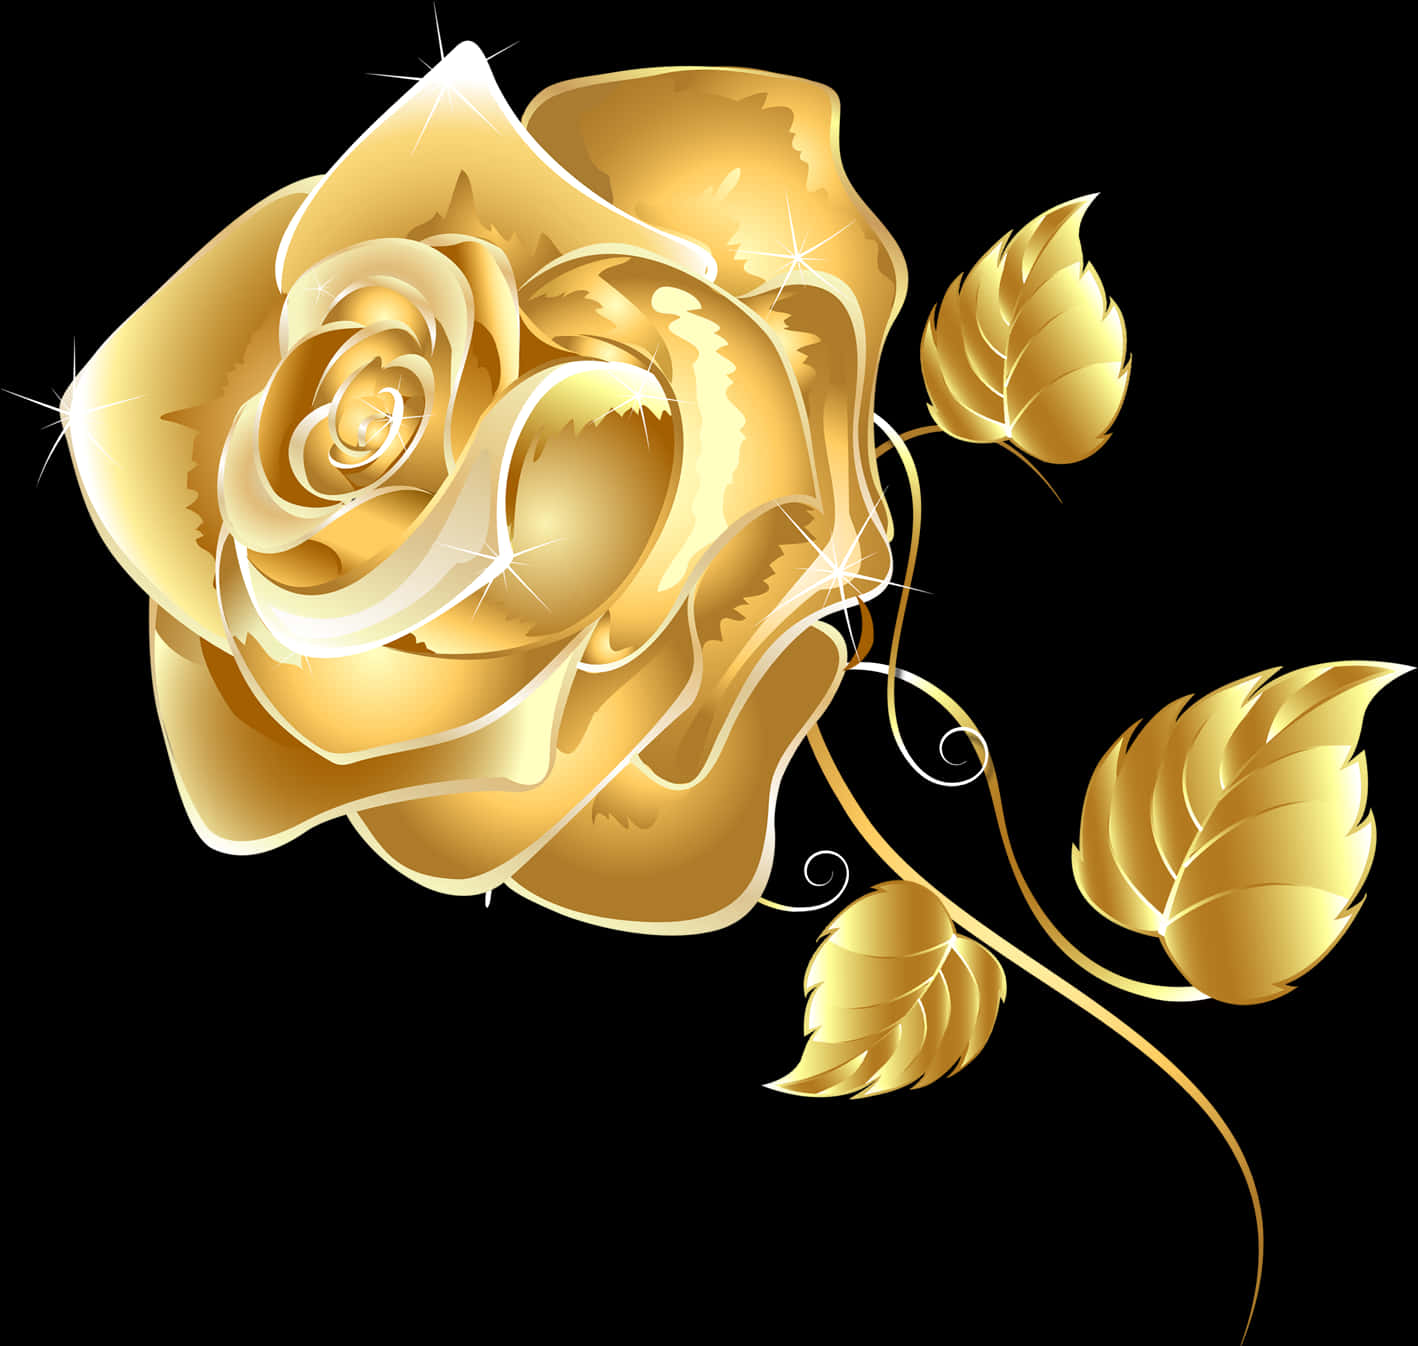 Golden Rose Illustration PNG image